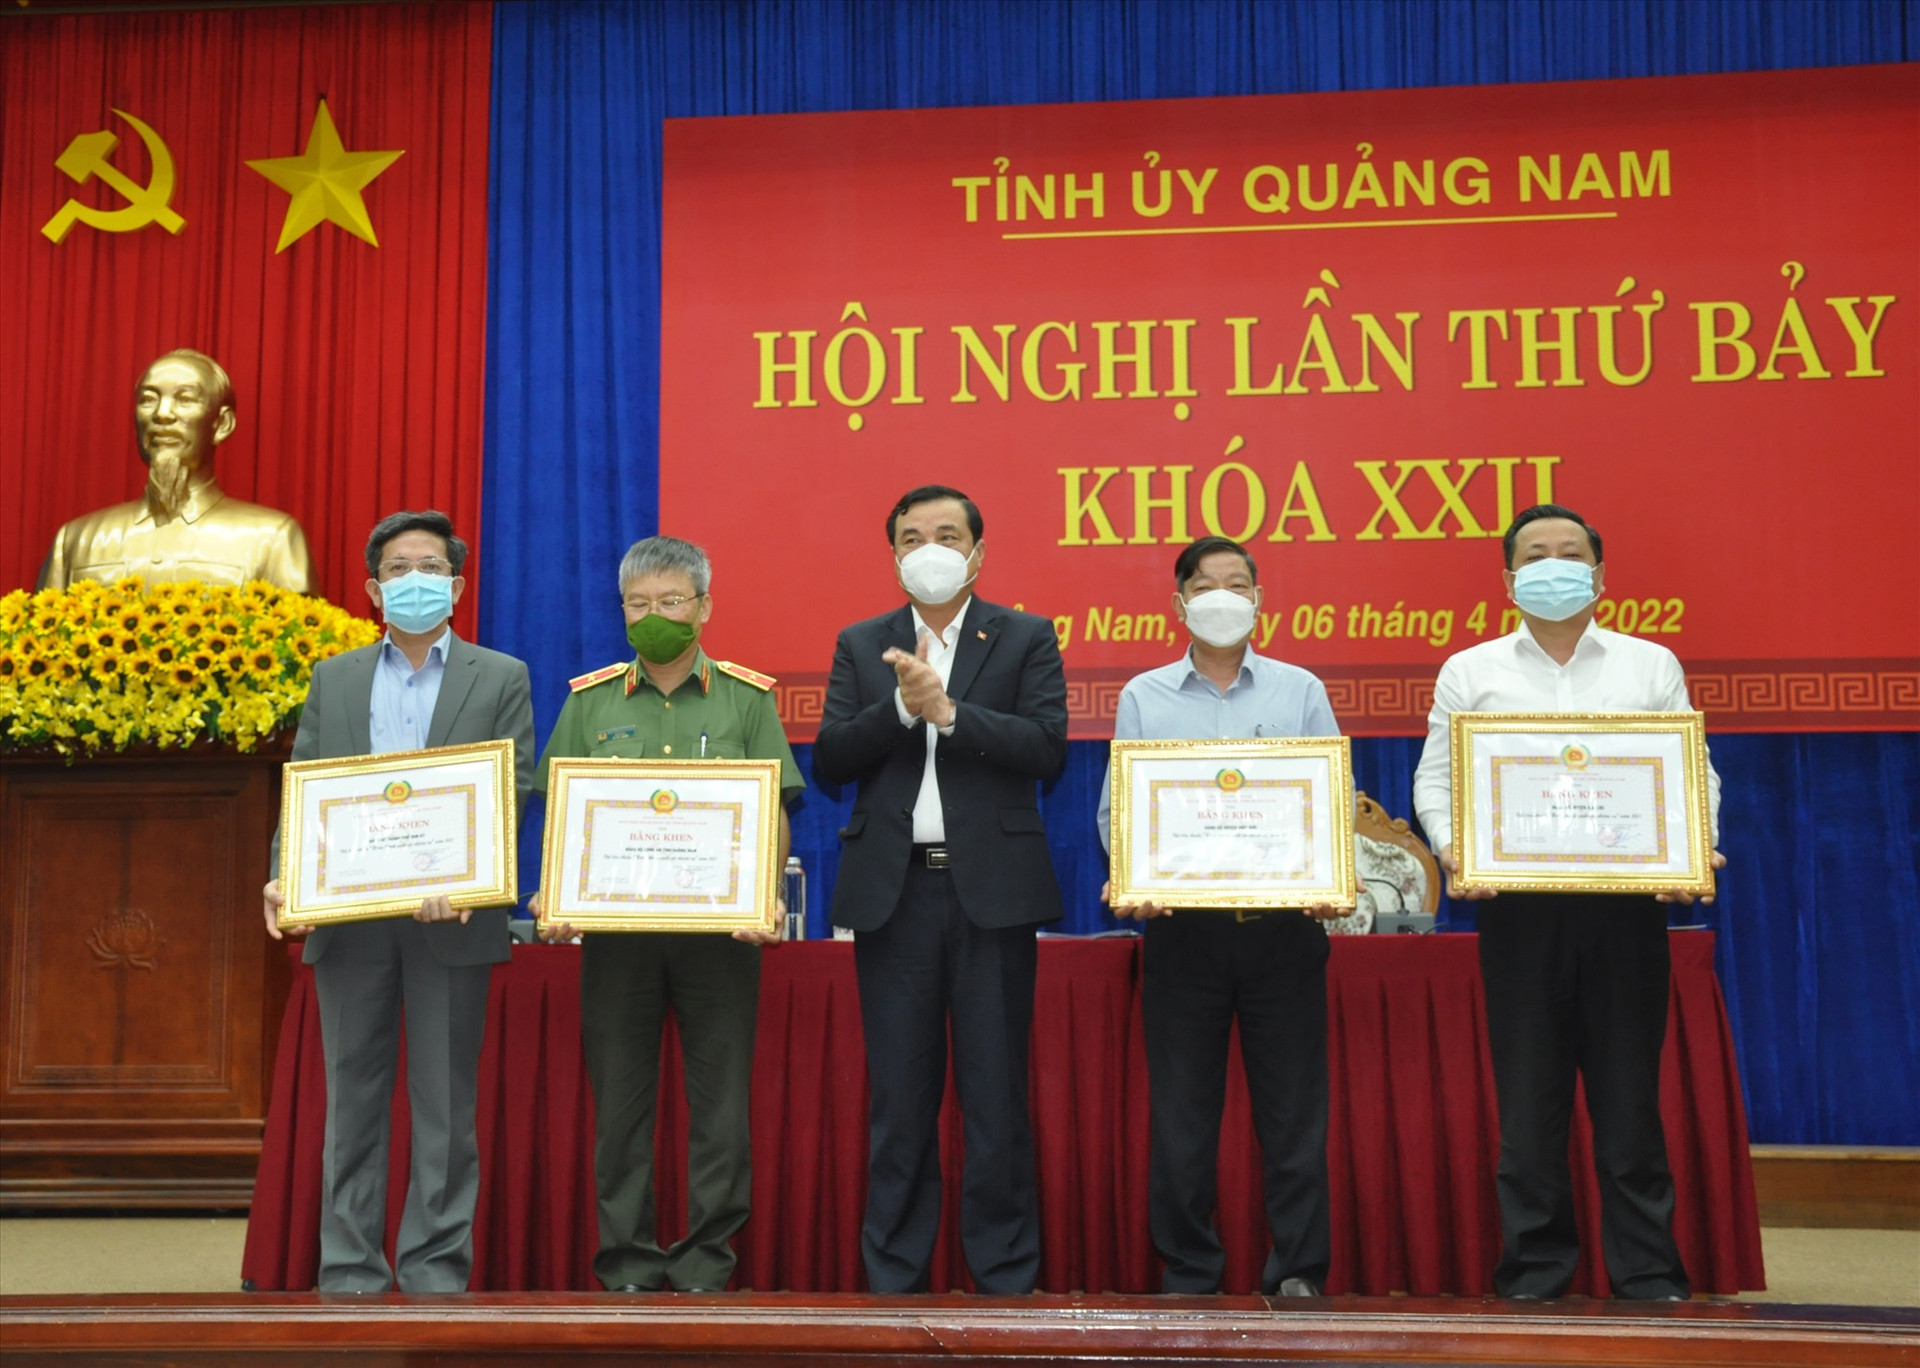 Tại hội nghị Tỉnh ủy lần thứ 7 (khóa XXII), Bí thư Tỉnh ủy Phan Việt Cường trao Bằng khen của Tỉnh ủy cho 4 đảng bộ Hoàn thành xuất sắc nhiệm vụ năm 2021. Ảnh: N.Đ